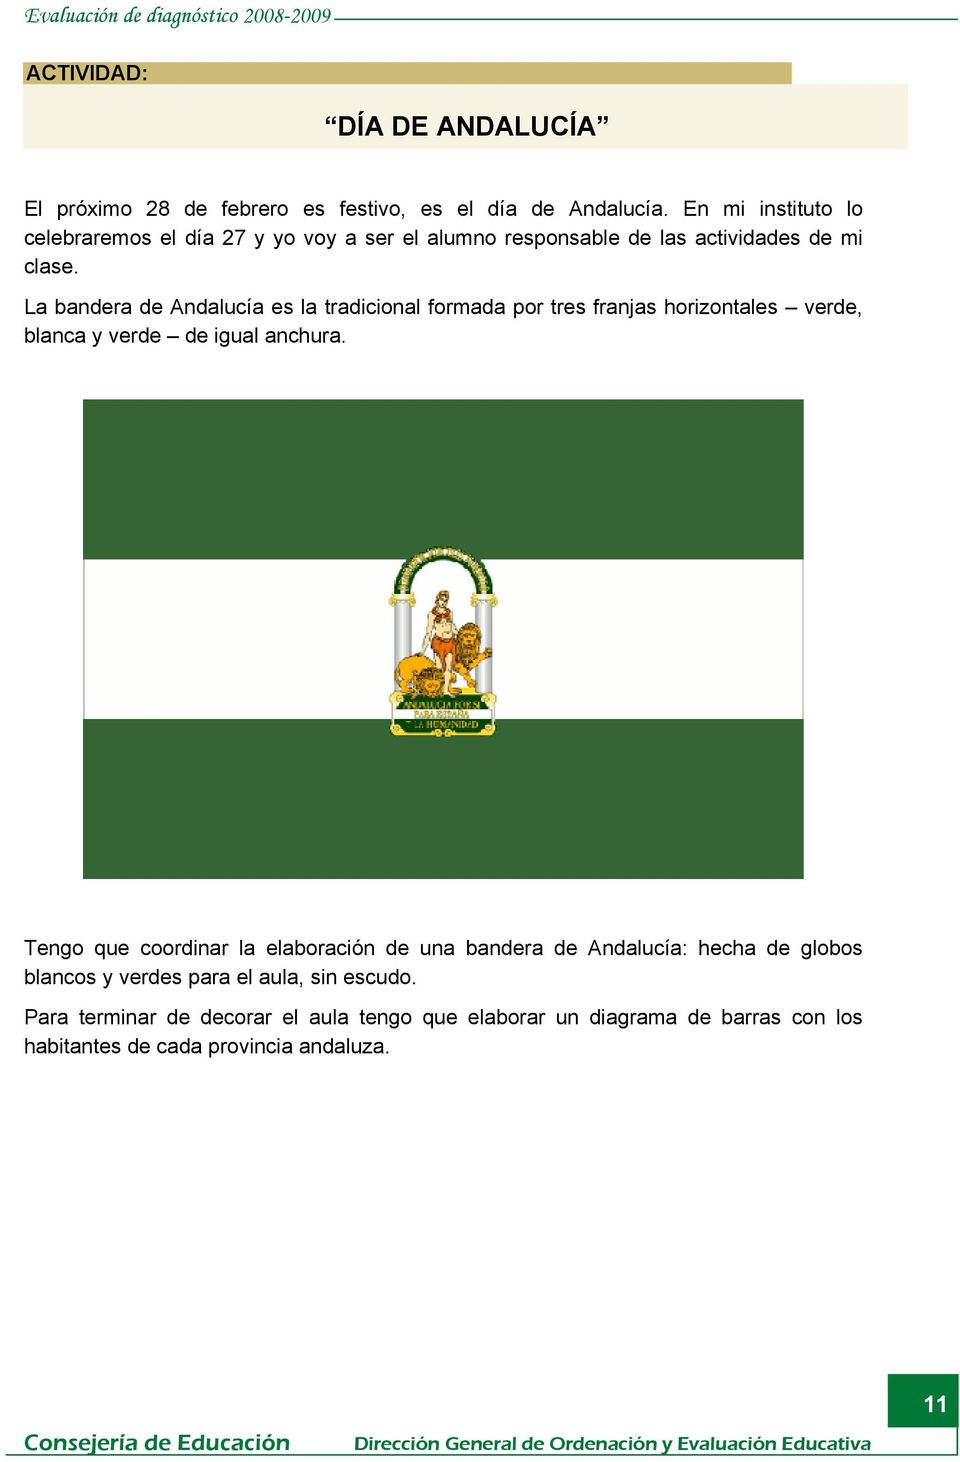 La bandera de Andalucía es la tradicional formada por tres franjas horizontales verde, blanca y verde de igual anchura.